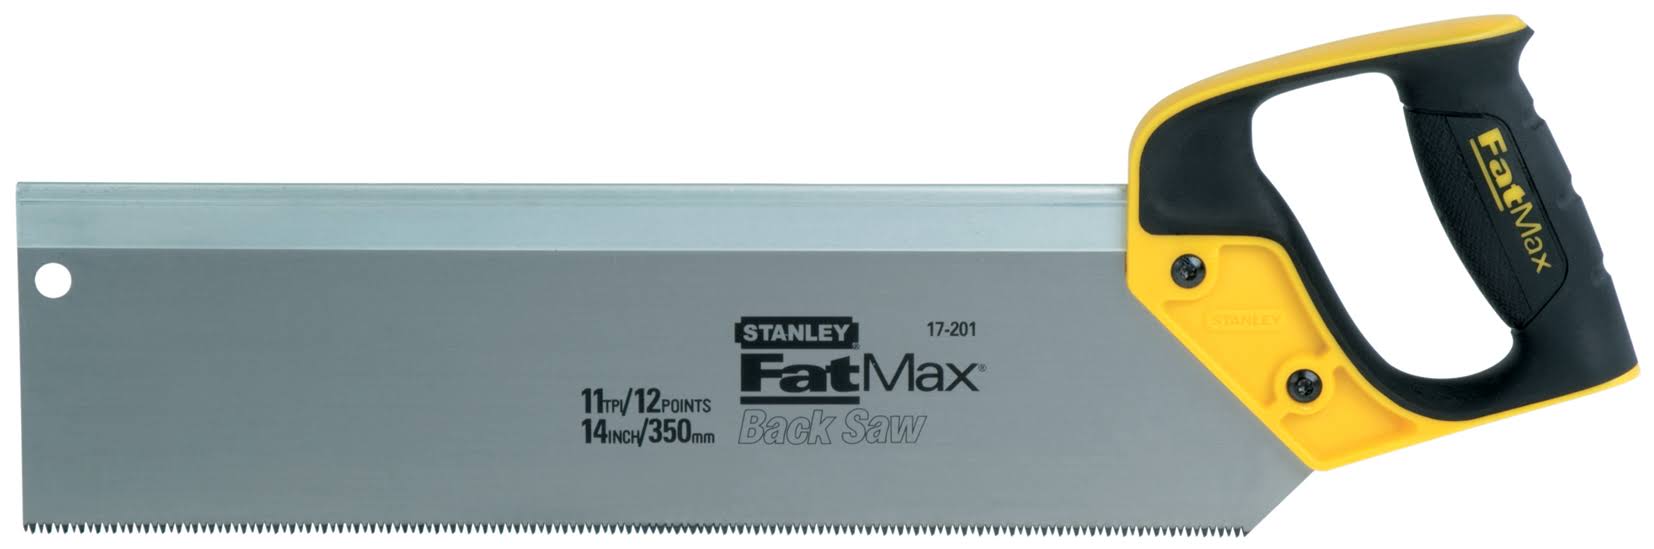 Stanley Fatmax Tenon Saw - 300mm